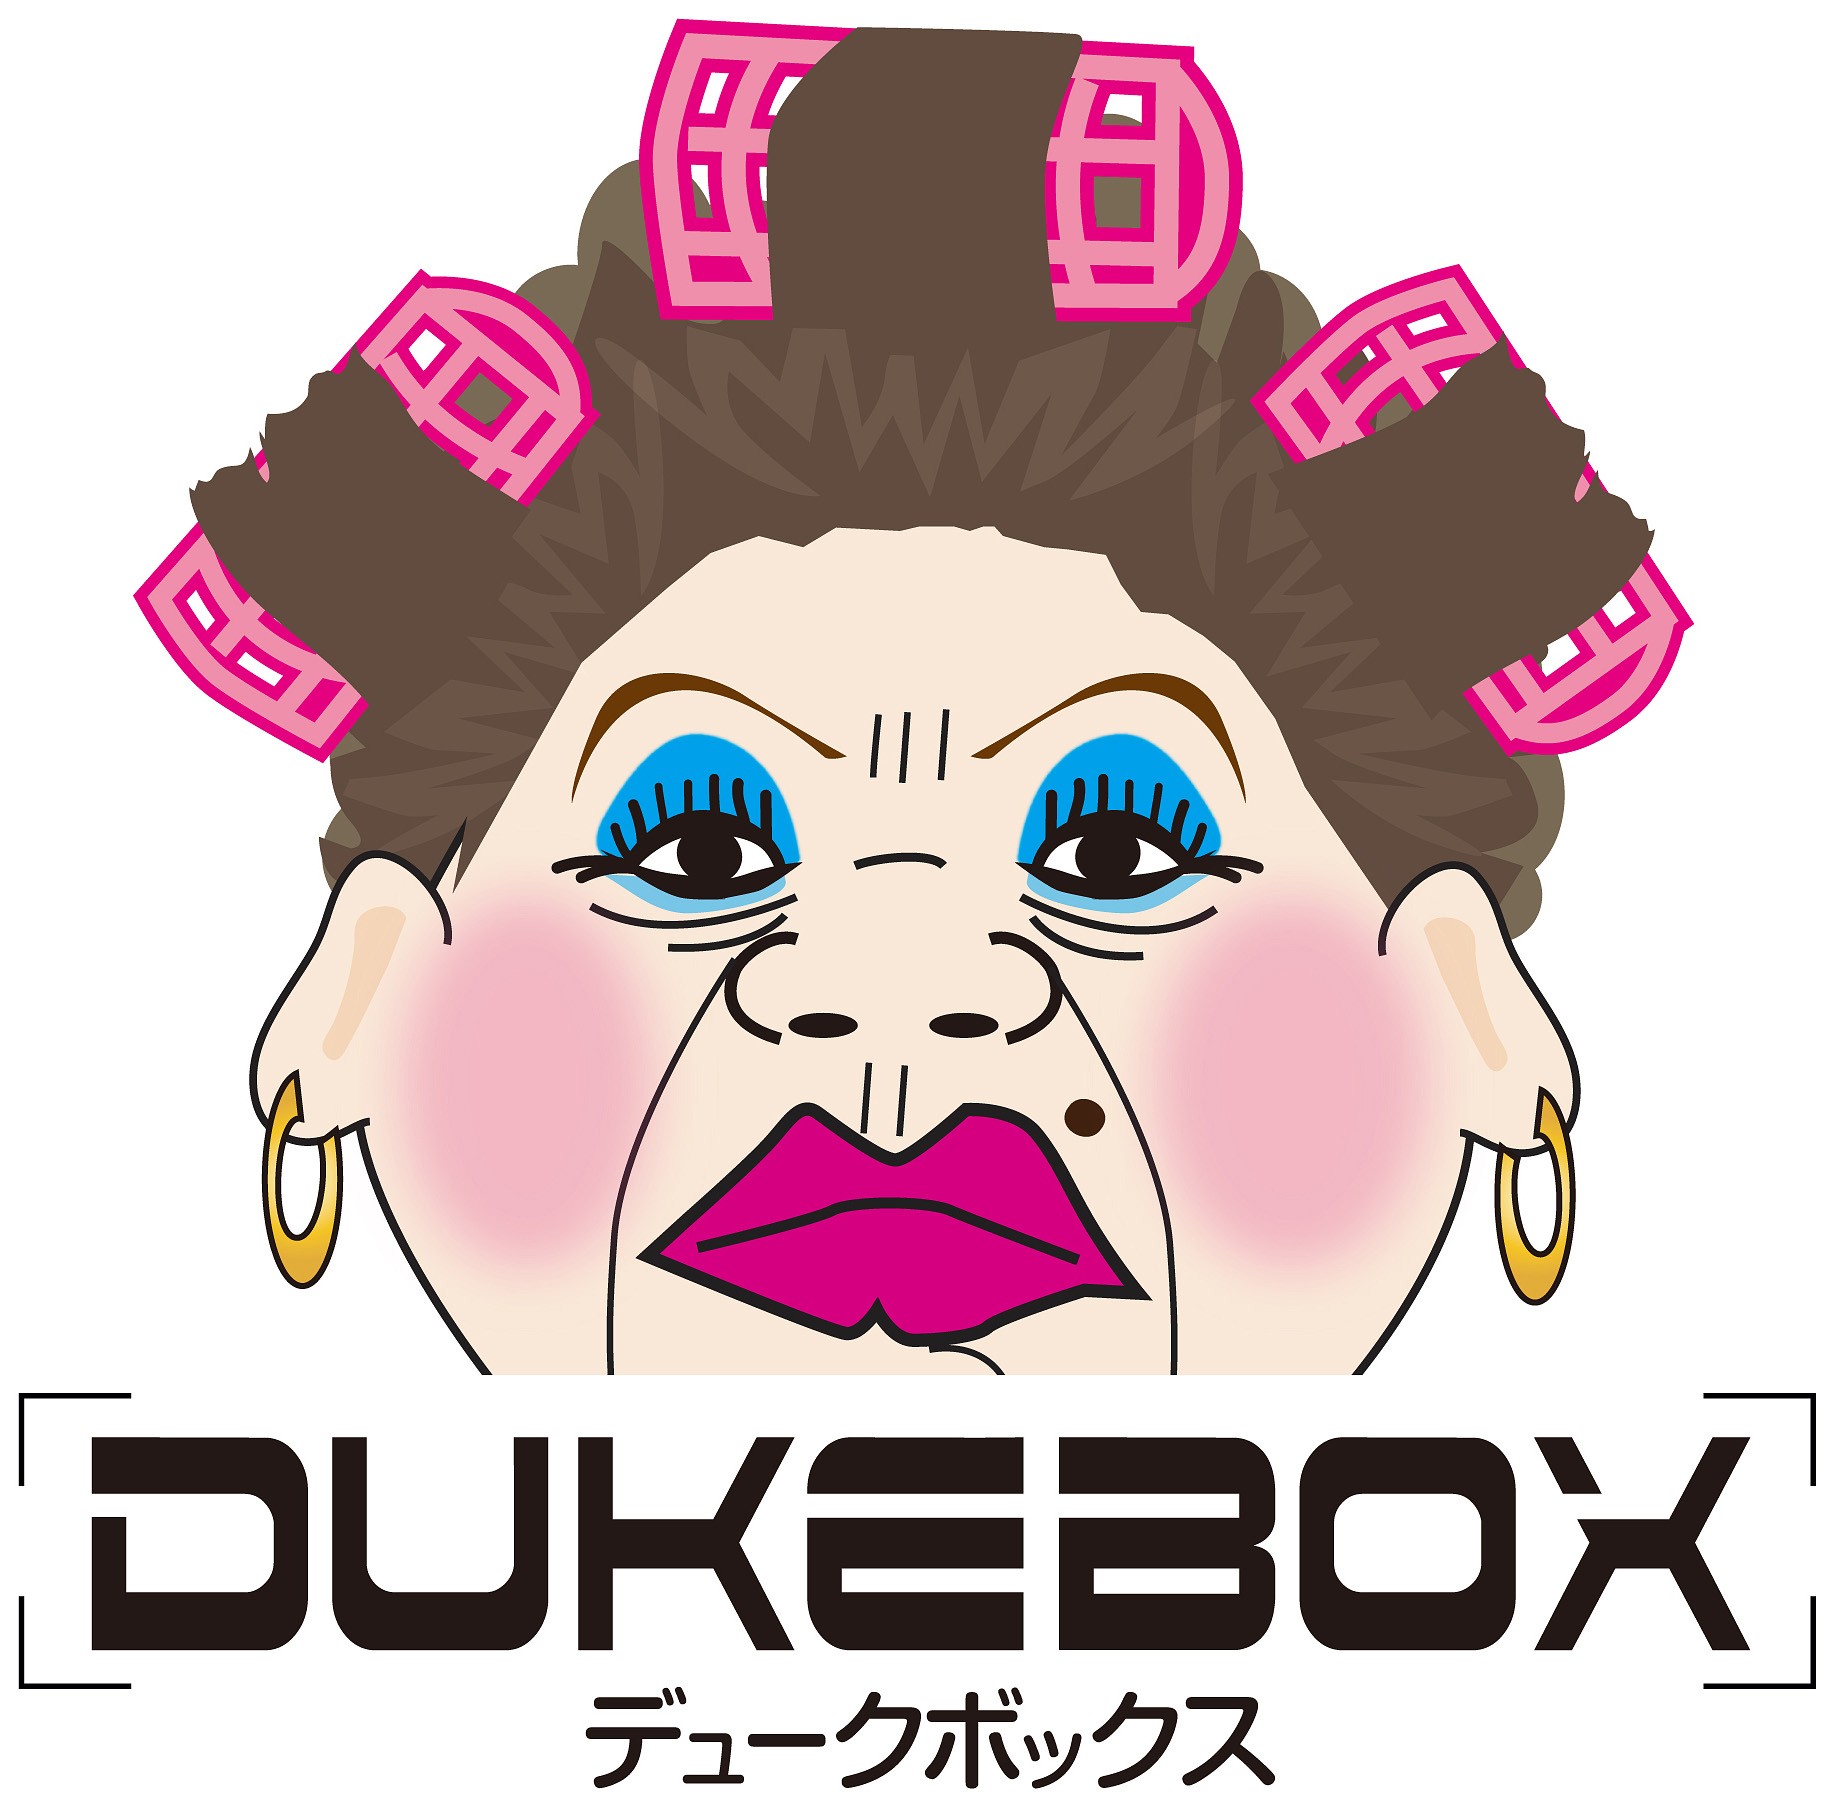 大阪おばちゃんtシャツ よっしゃっ Dukebox